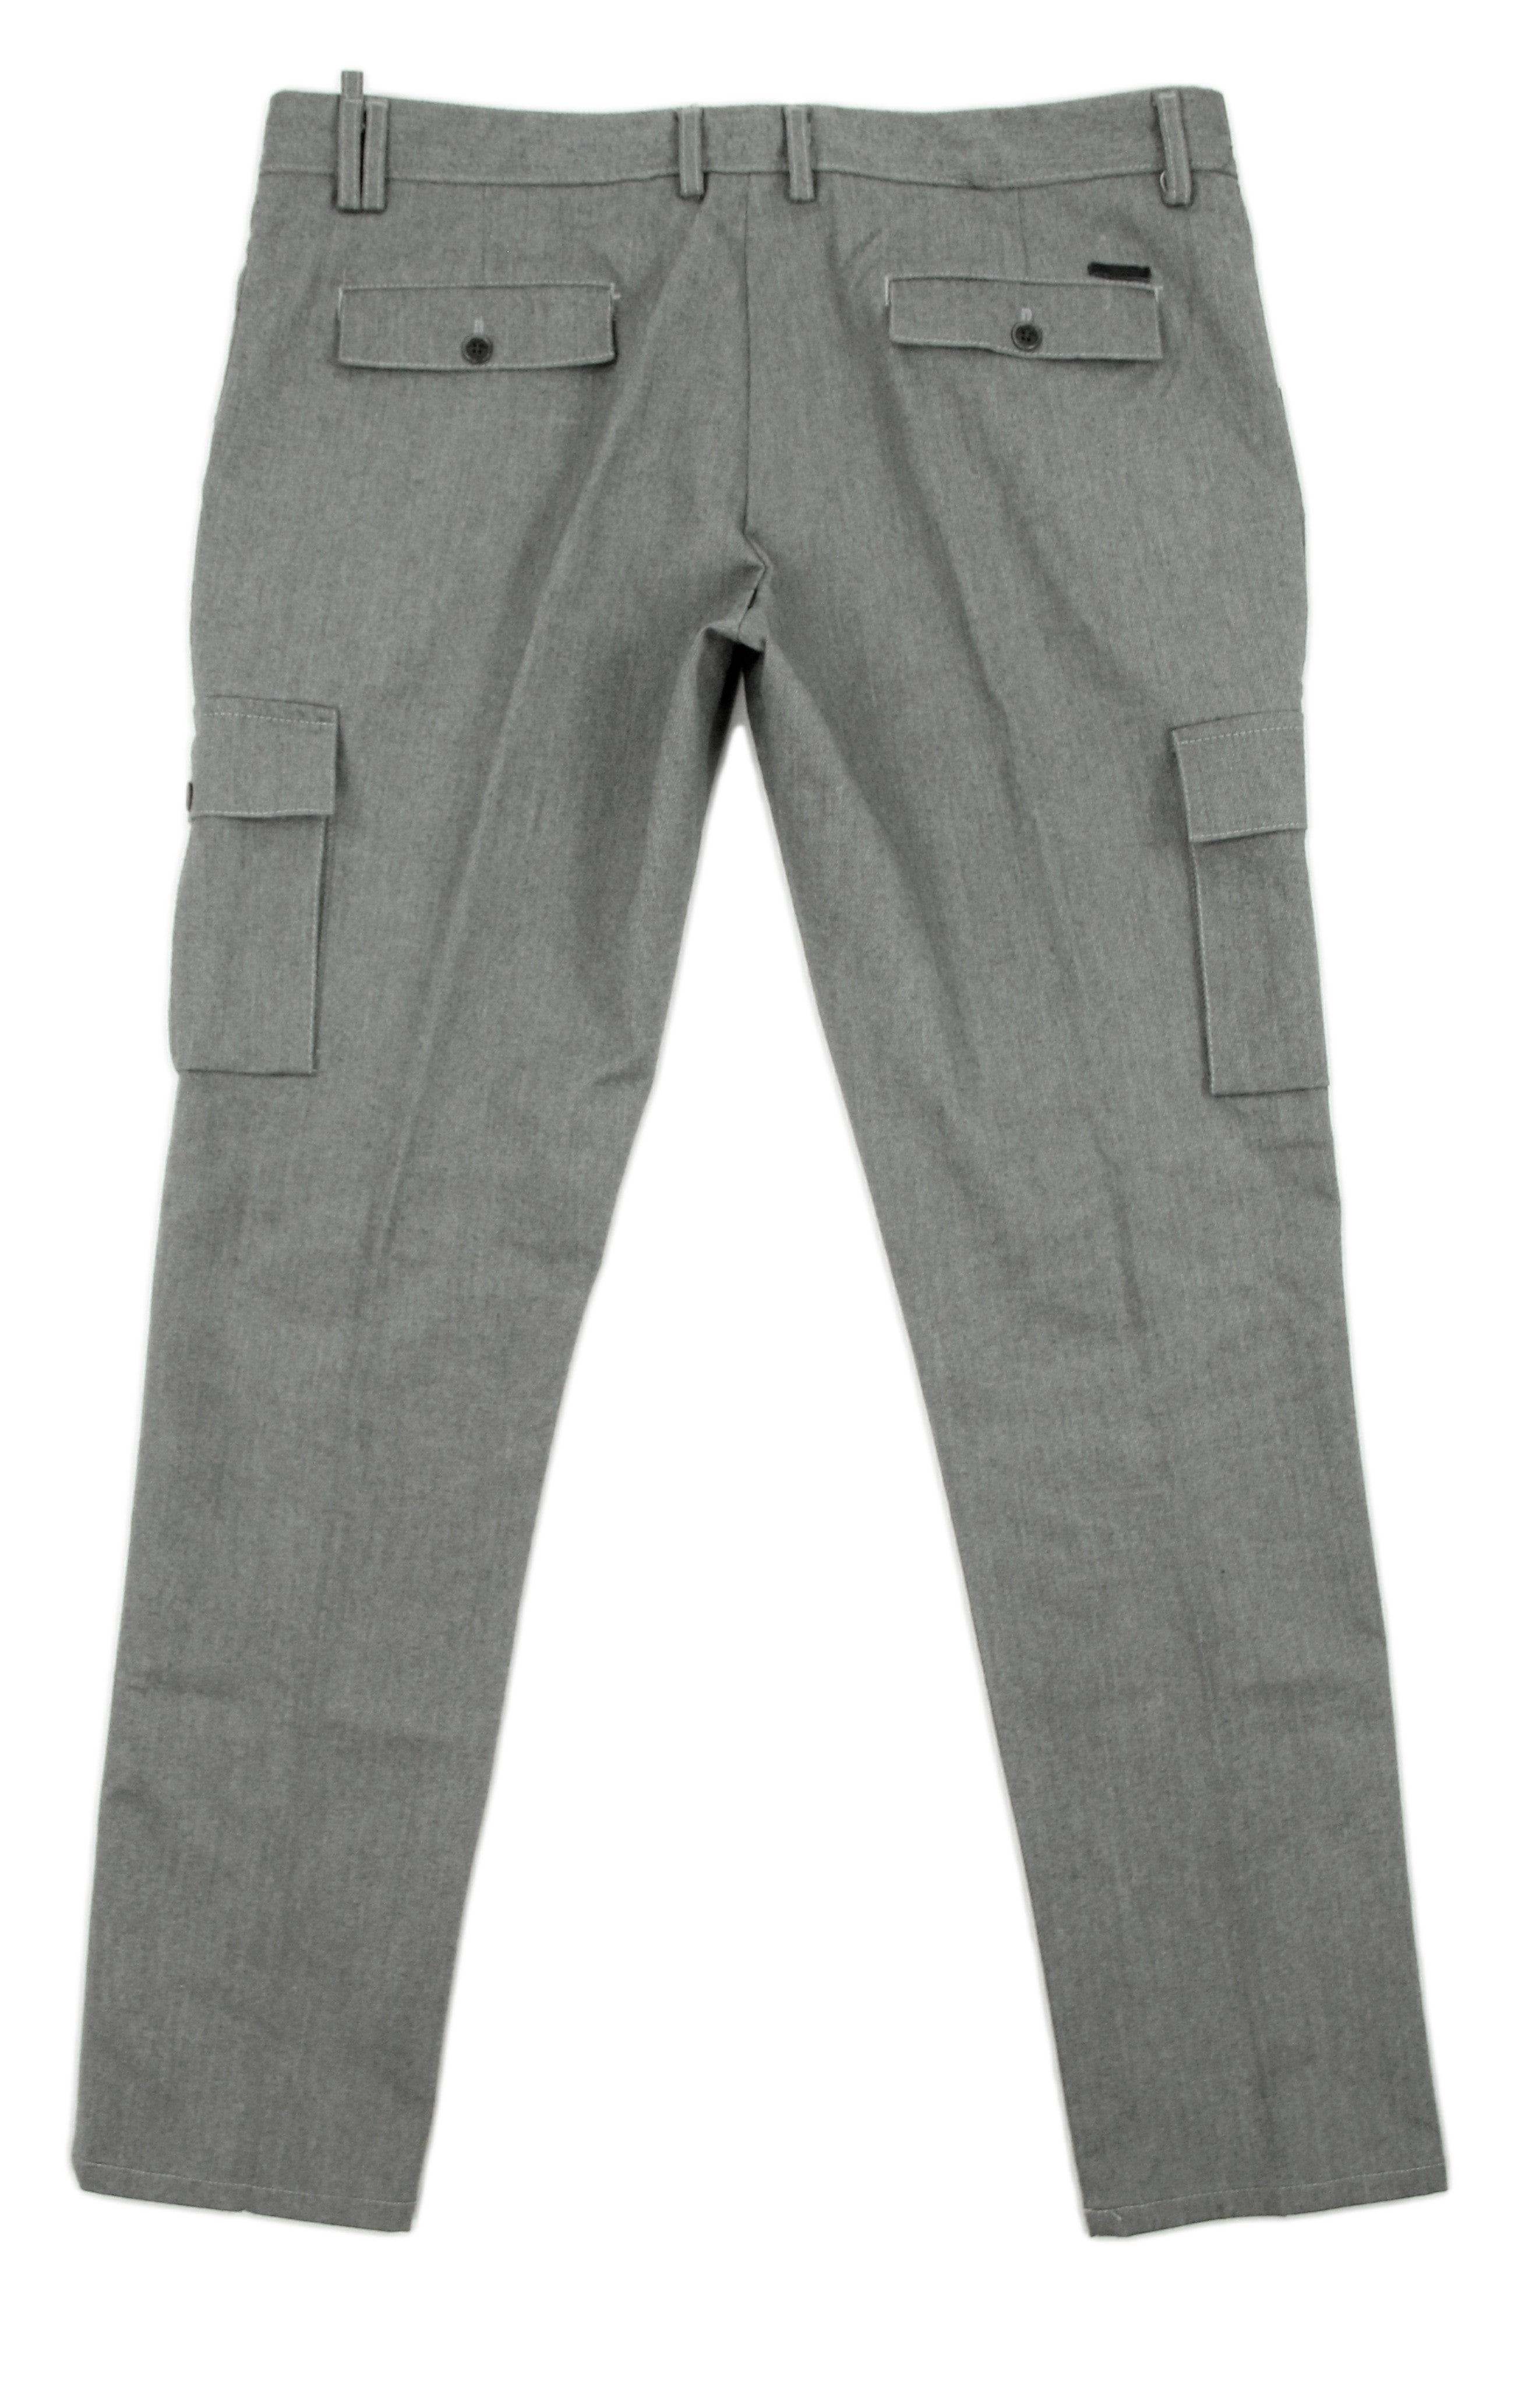 HAMAKI-HO  Men's Stretch Gray Twill Flat Front Cargo Pants, EU 54, USA 44